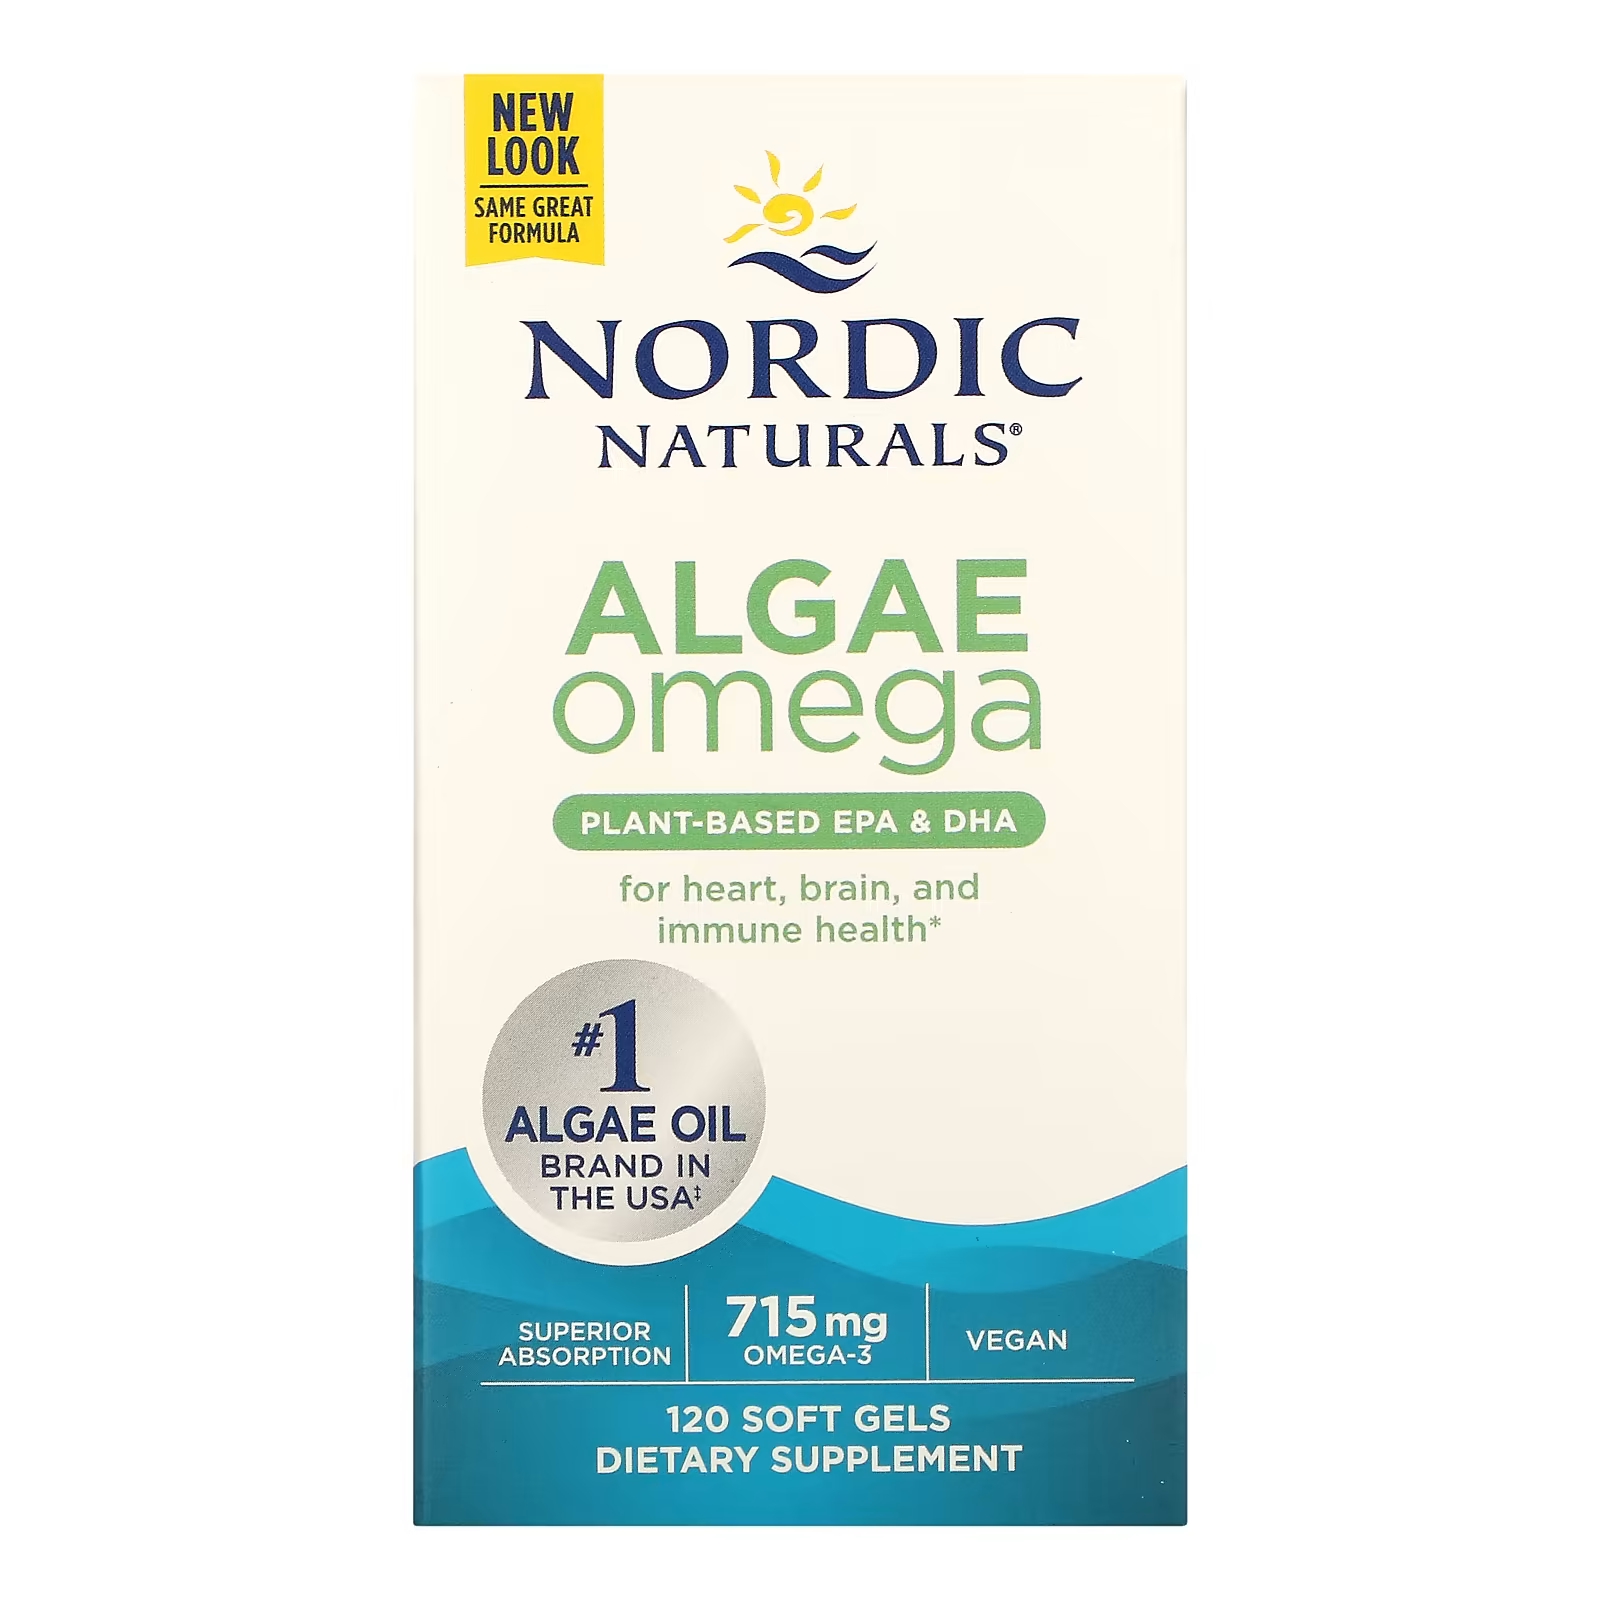 Омега водорослей Nordic Naturals, 715 мг, 120 мягких желатиновых капсул solgar натуральная омега 3 дгк растительного происхождения 200 мг 50 вегетарианских мягких желатиновых капсул